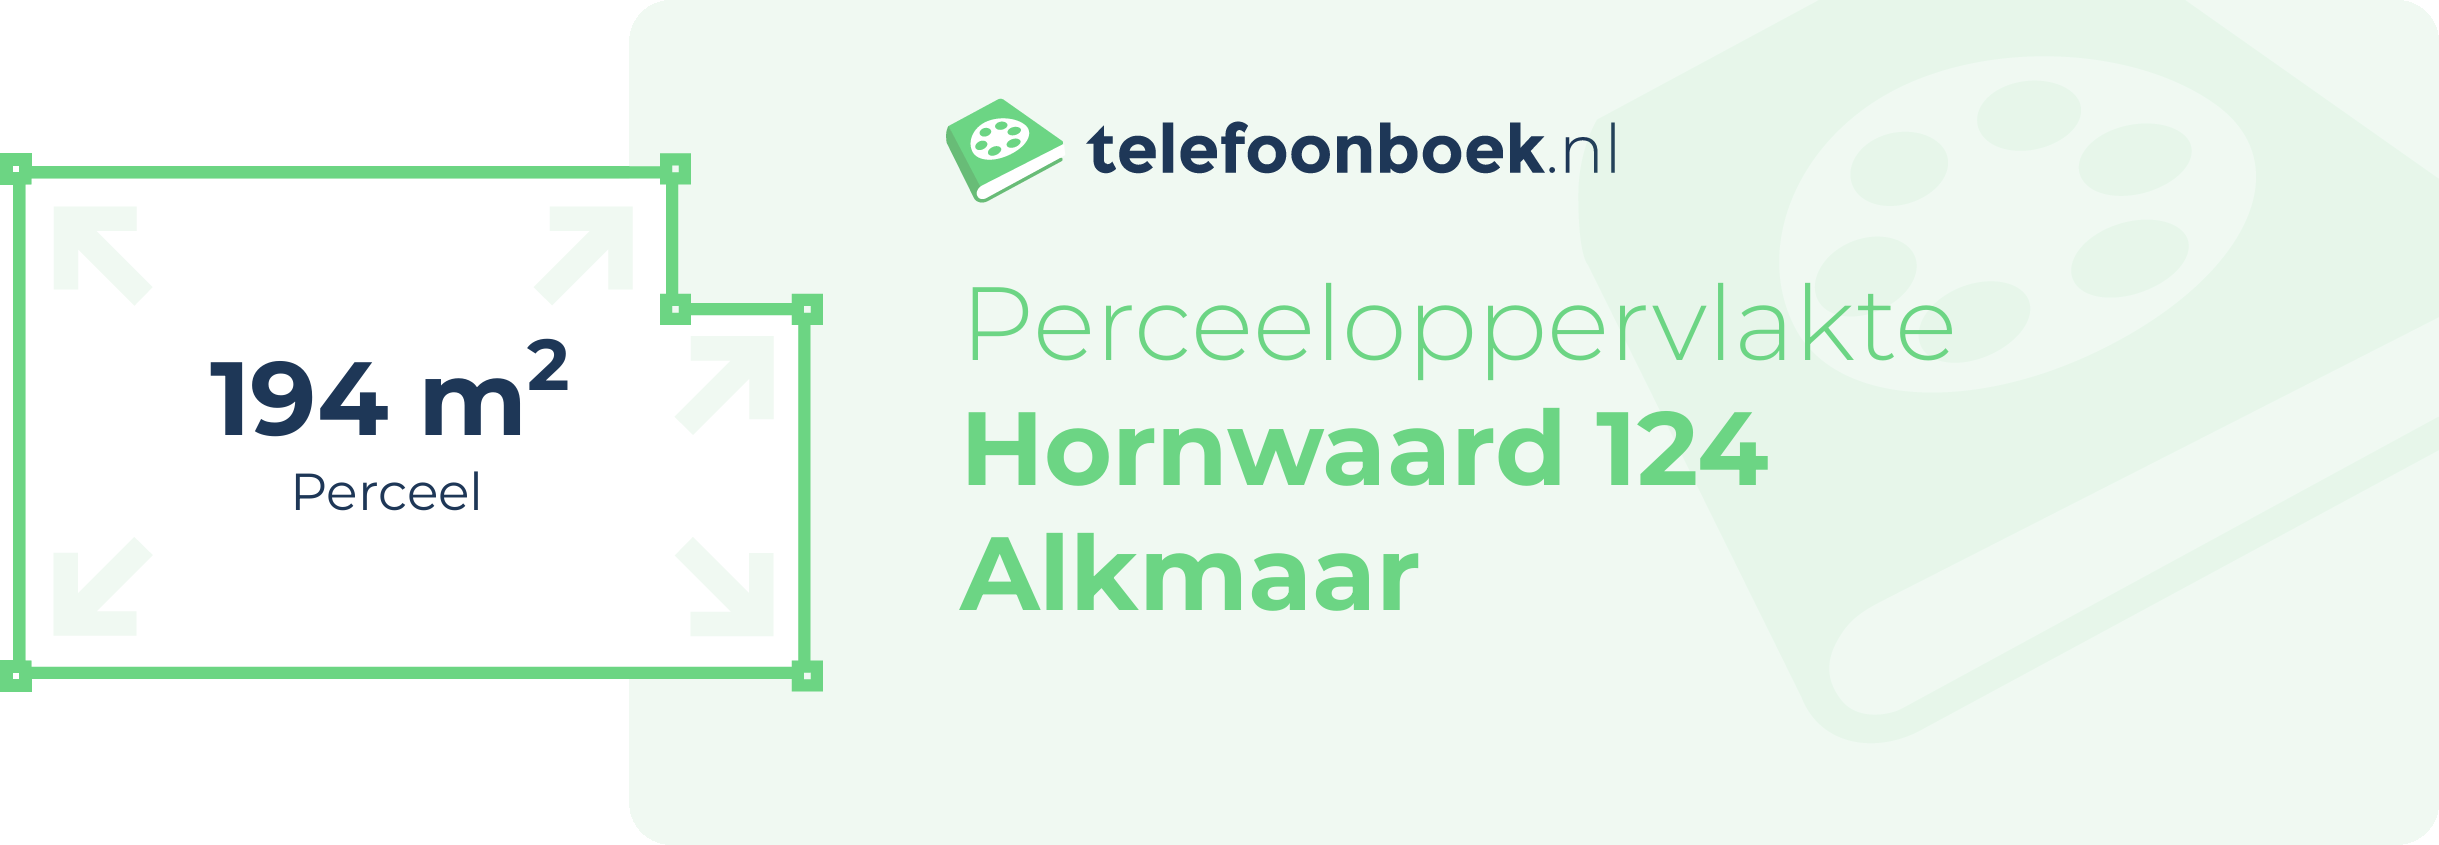 Perceeloppervlakte Hornwaard 124 Alkmaar